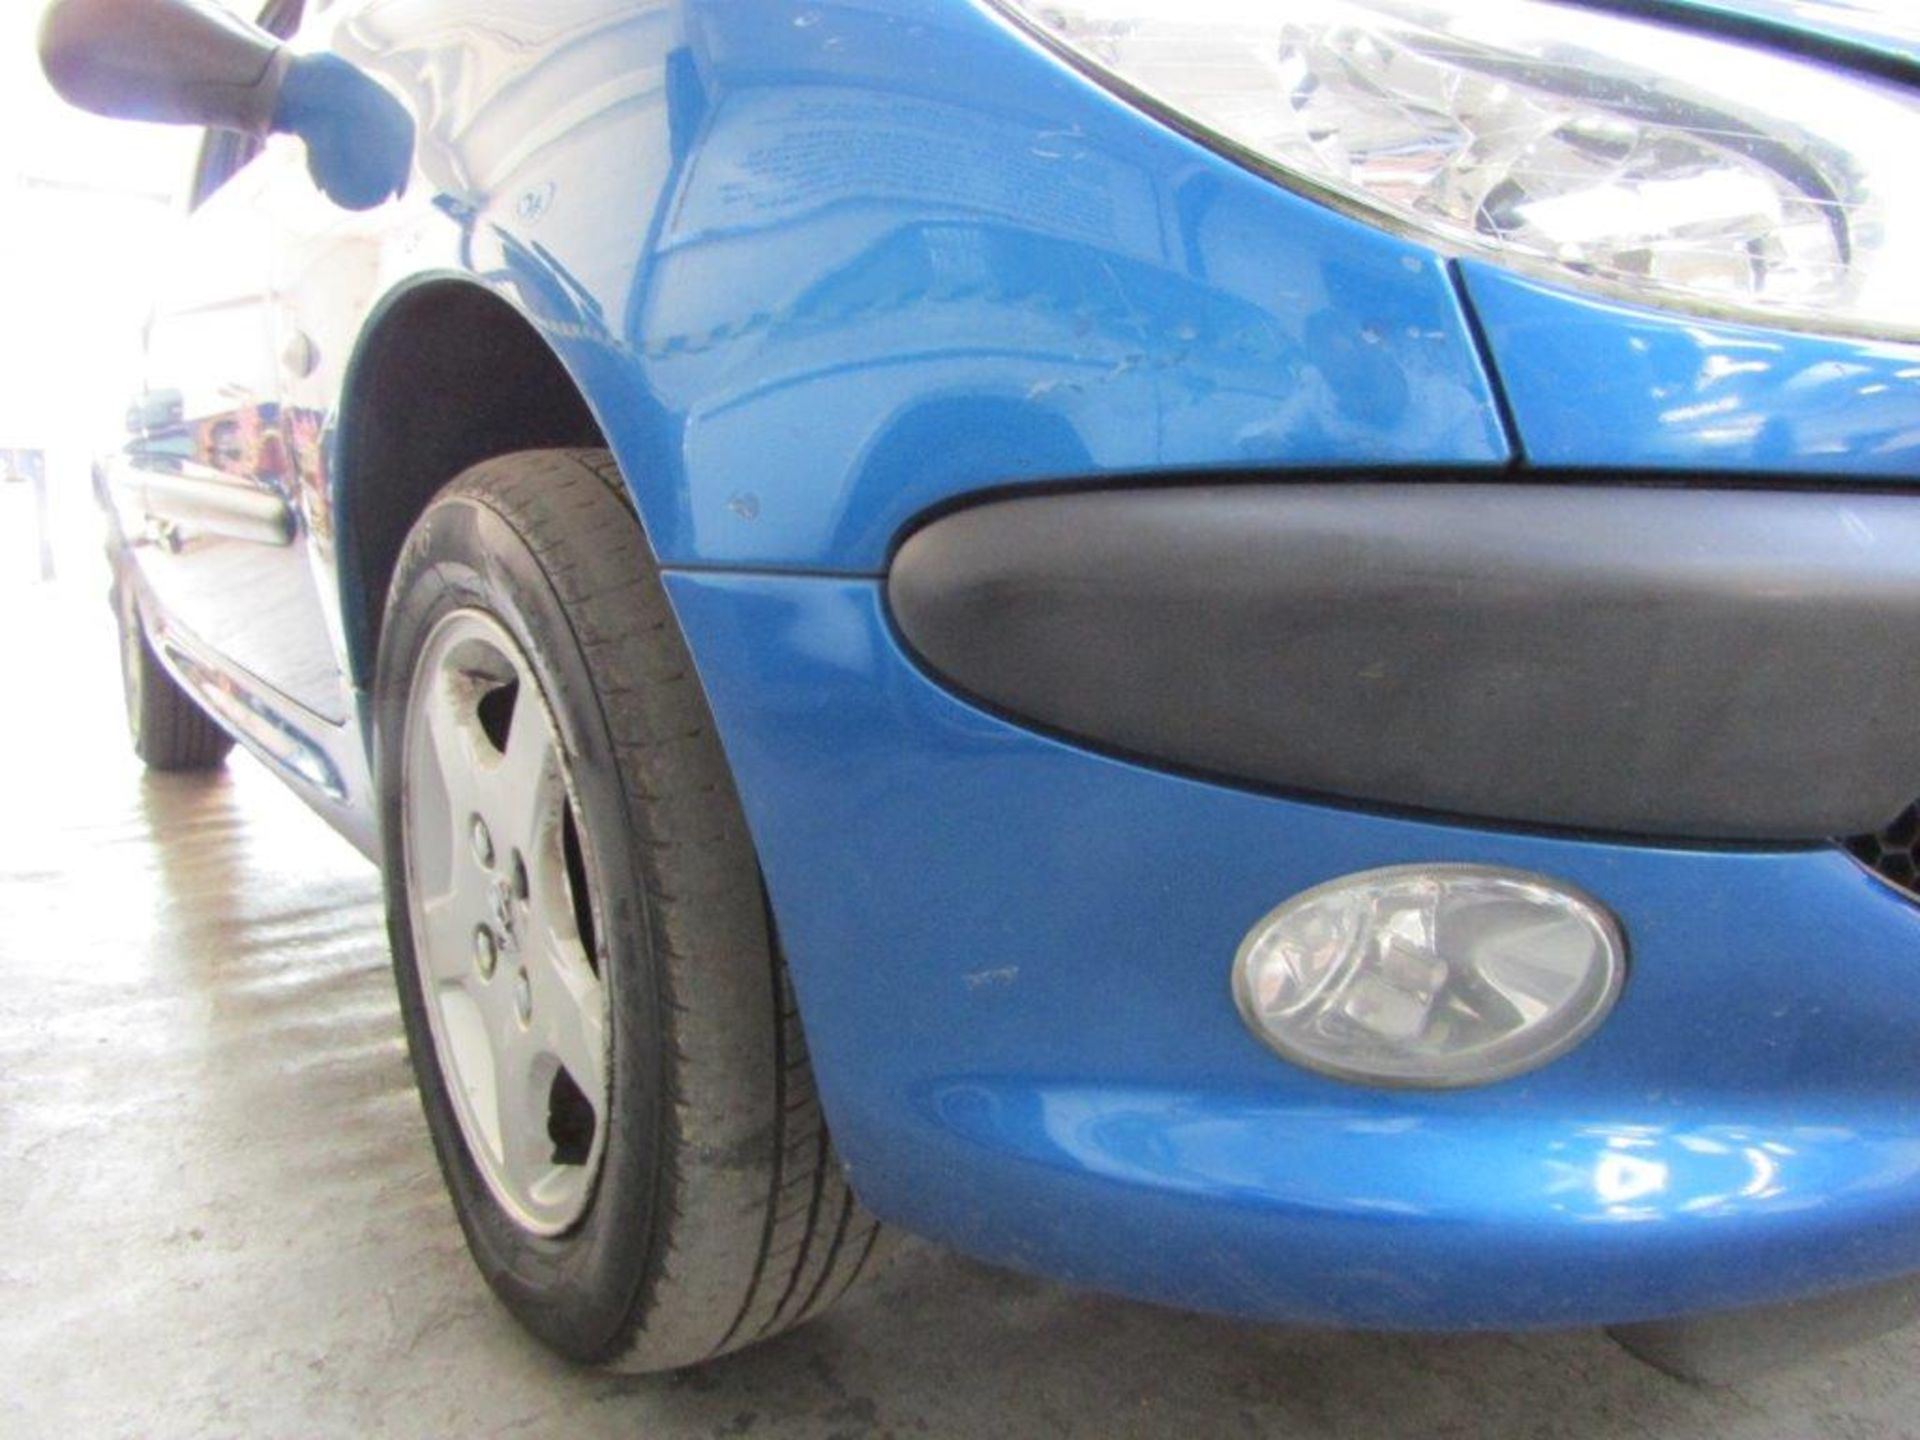 04 04 Peugeot 206 SE - Image 17 of 18